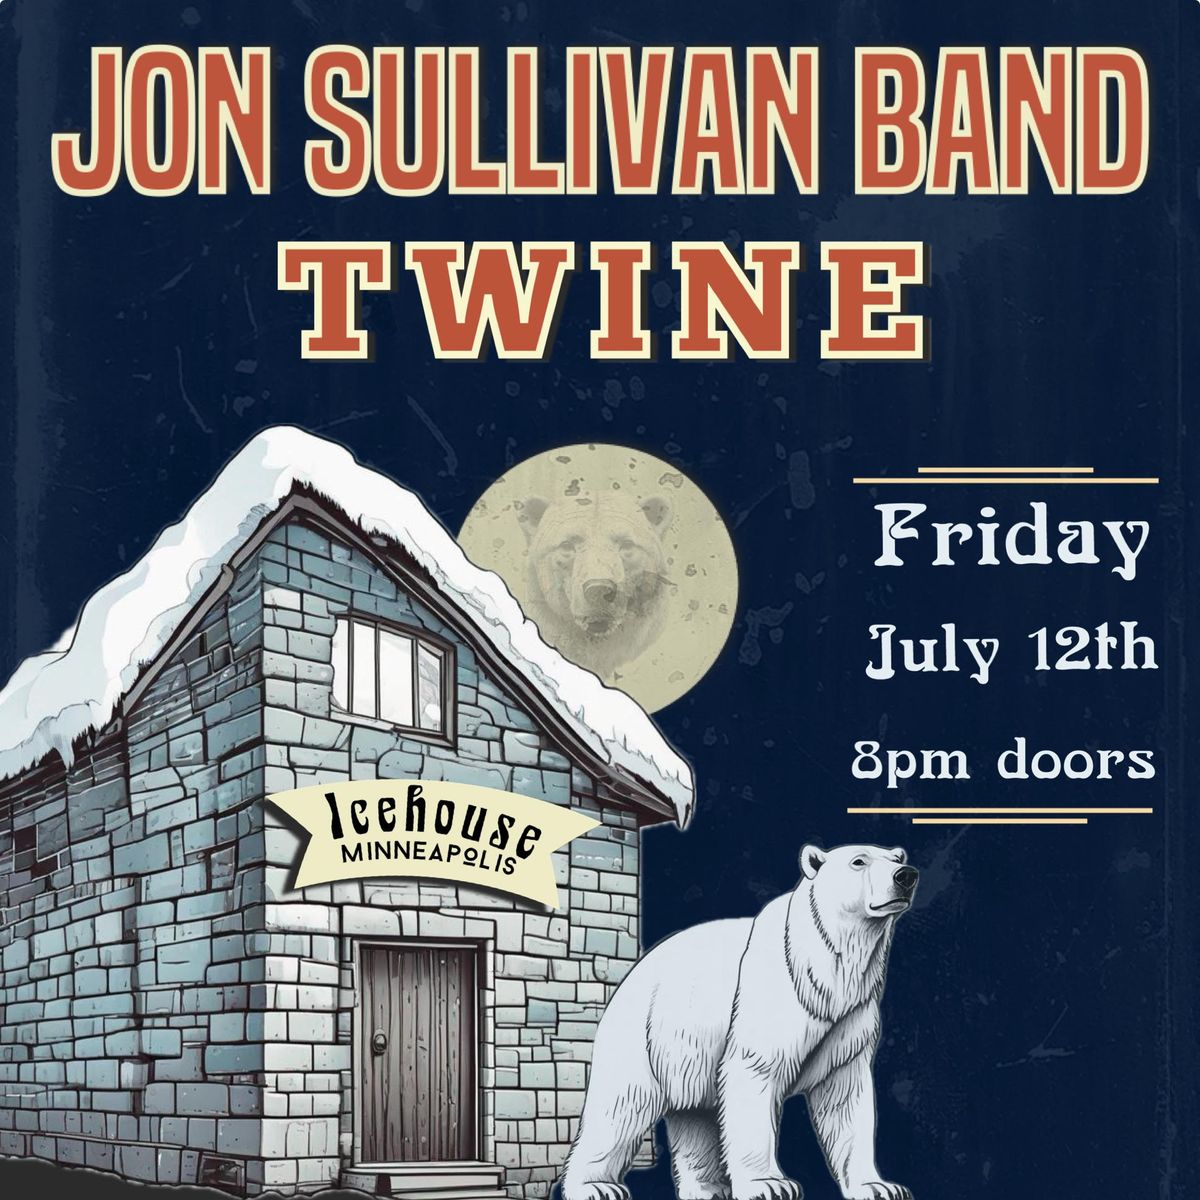 Jon Sullivan Band & TWINE @ ICEHOUSE